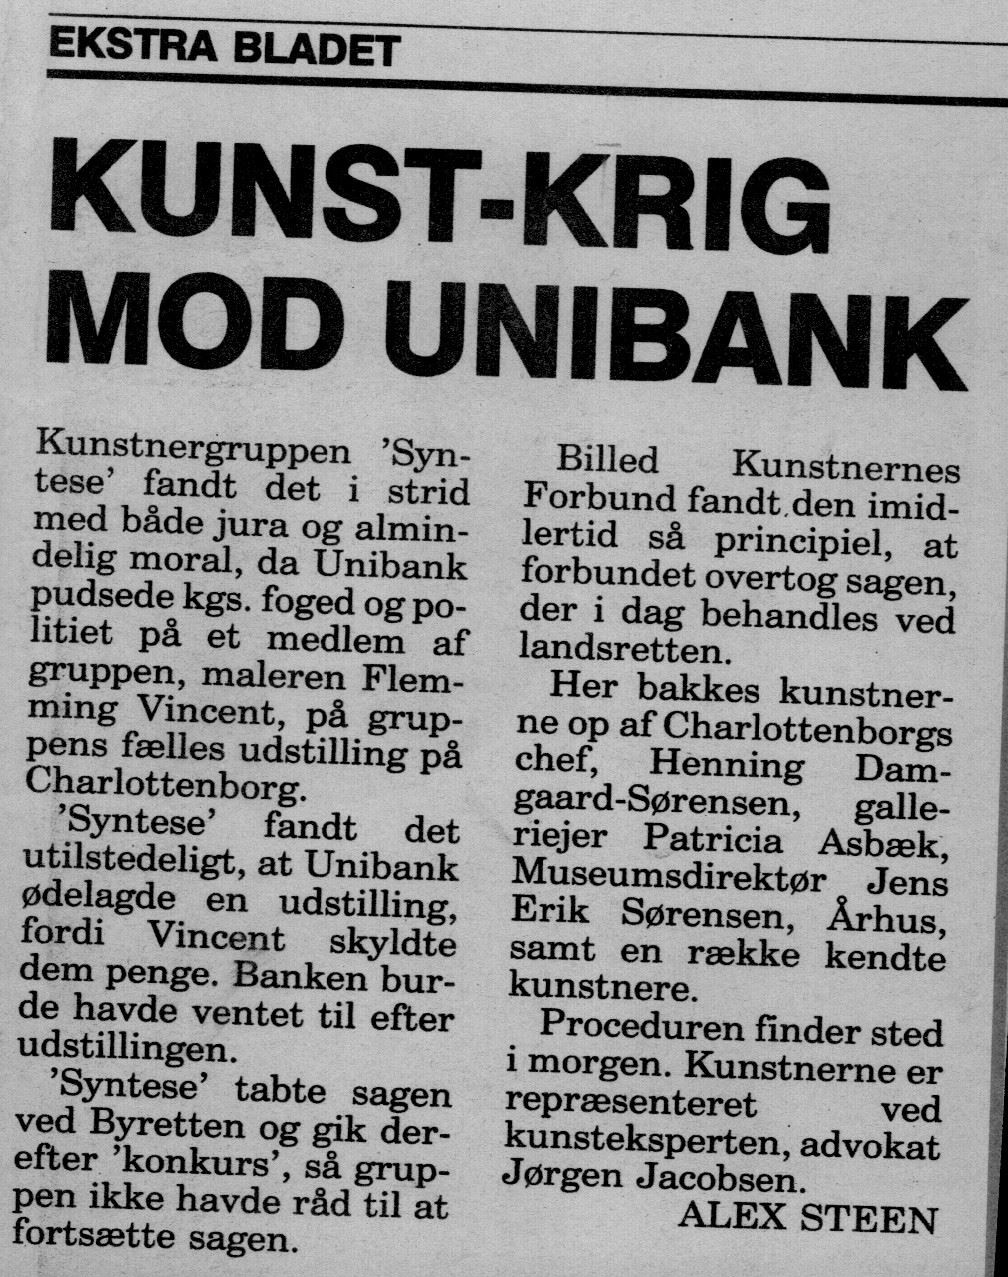 KUNST-KRIG MOD UNIBANK. Omtale (Retssag. Den lange rejse, Charlottenborg, København 1989). Alex Steen. Ekstra Bladet.